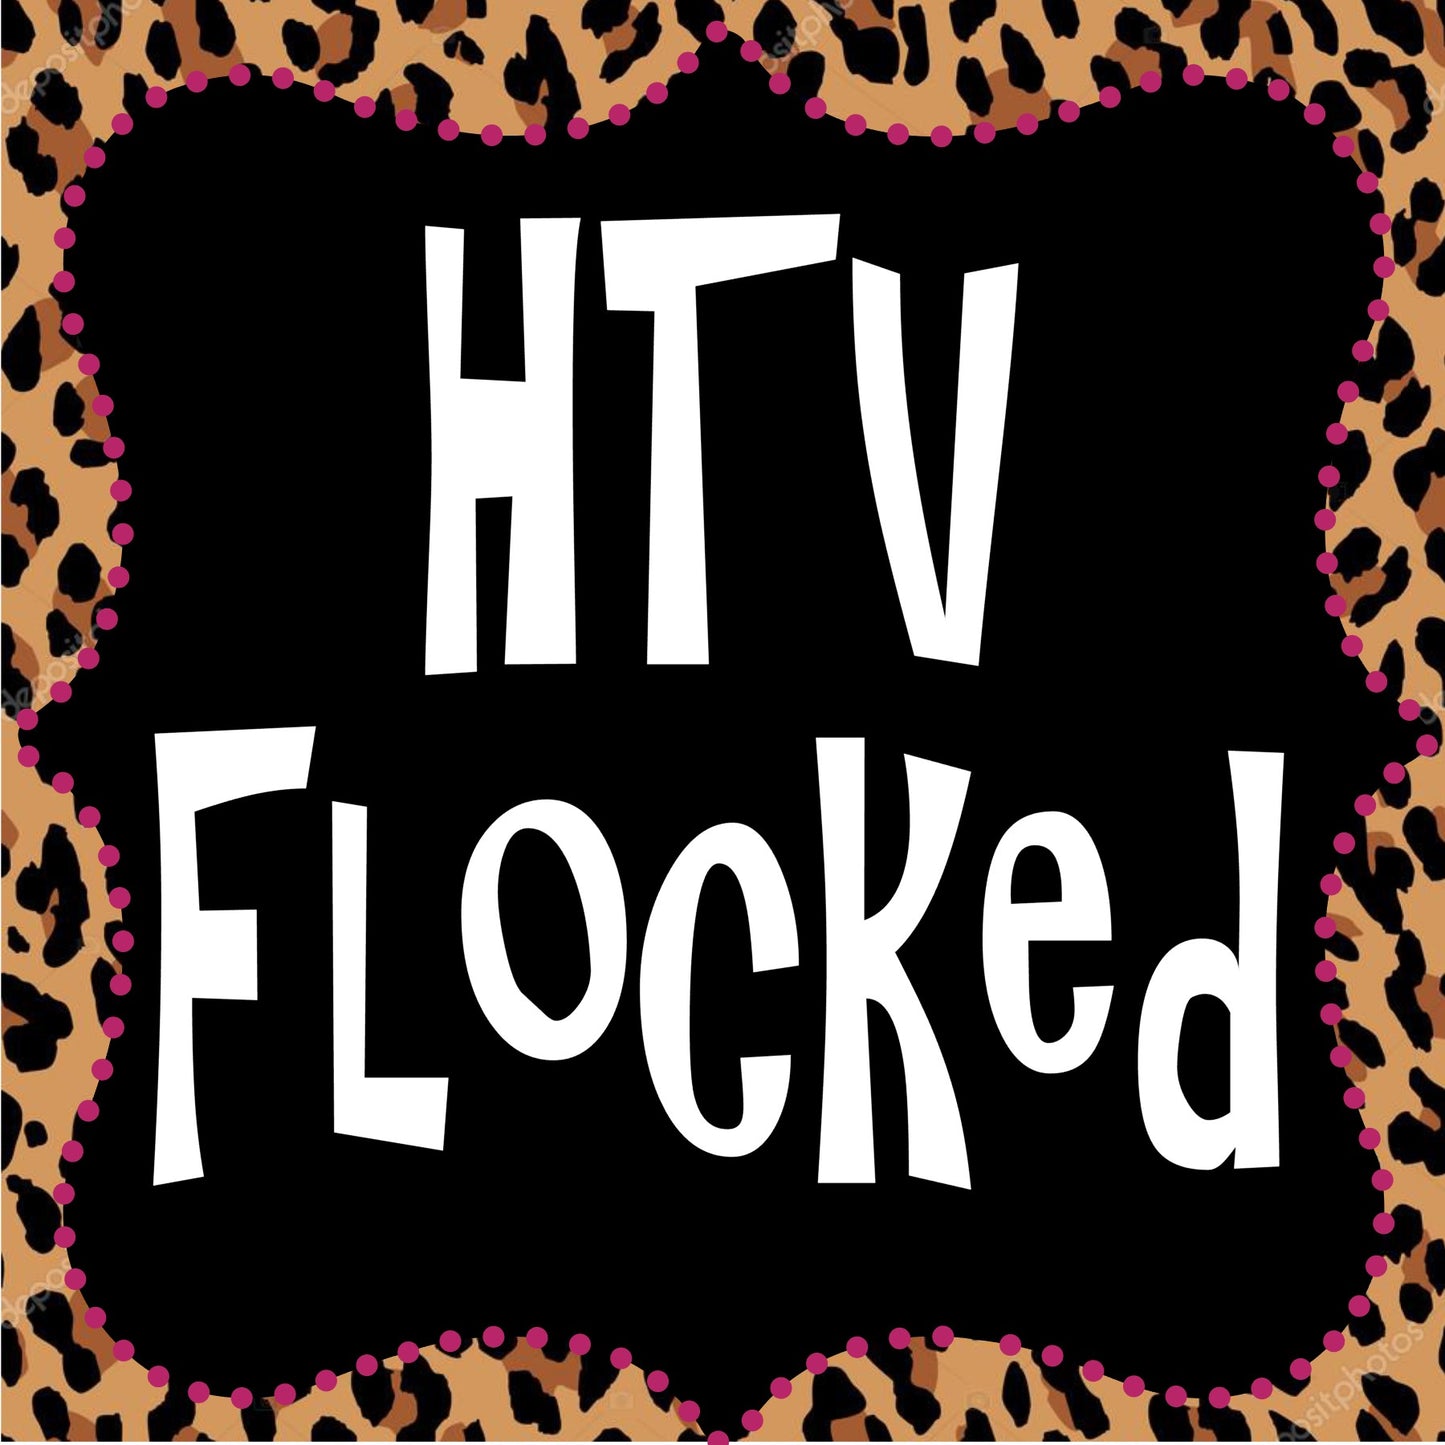 HTV Flocked